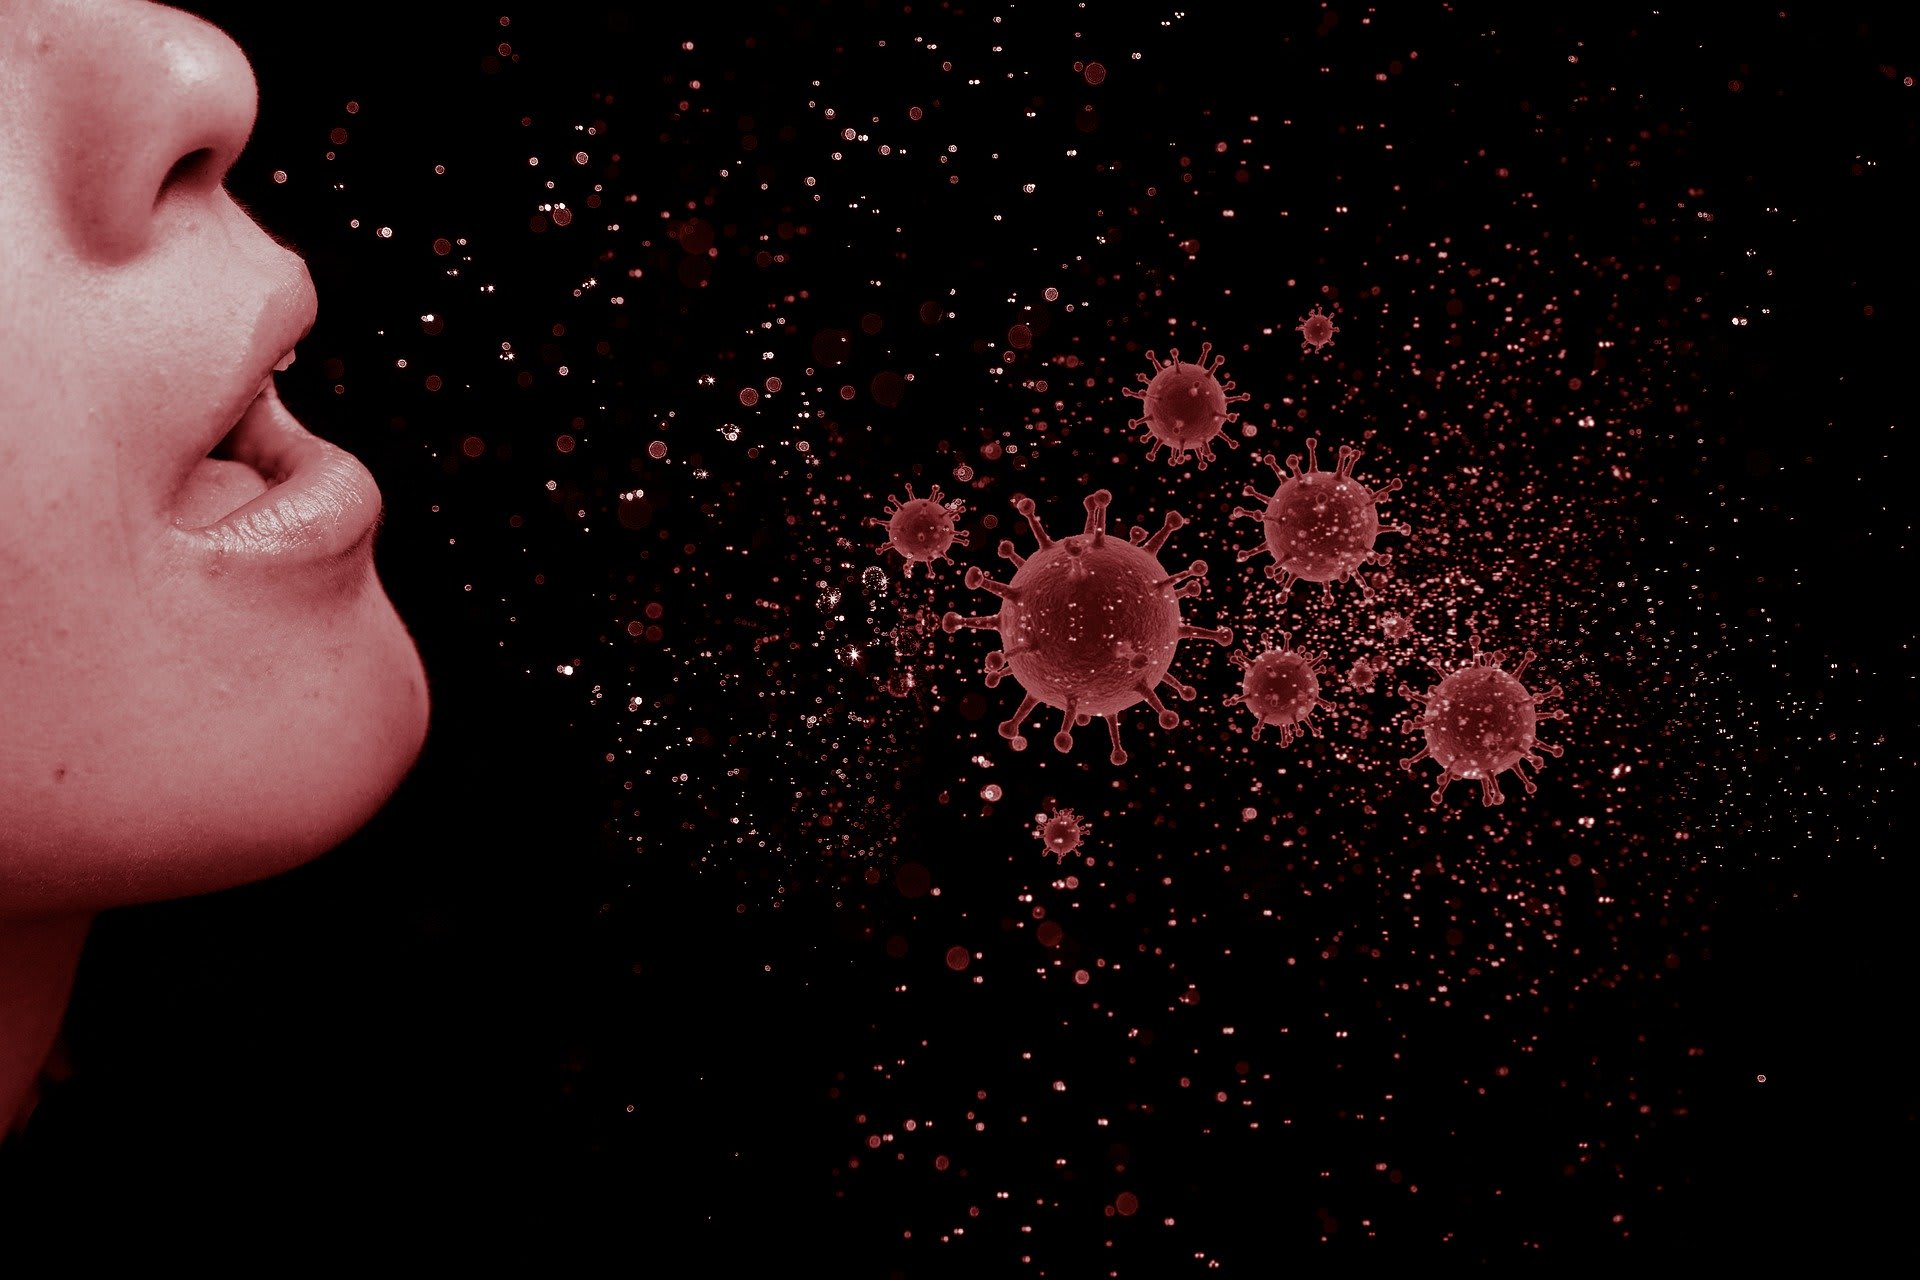 Šéf WHO: Pandemie COVID-19 není ani zdaleka u konce, šíření viru naopak zrychluje